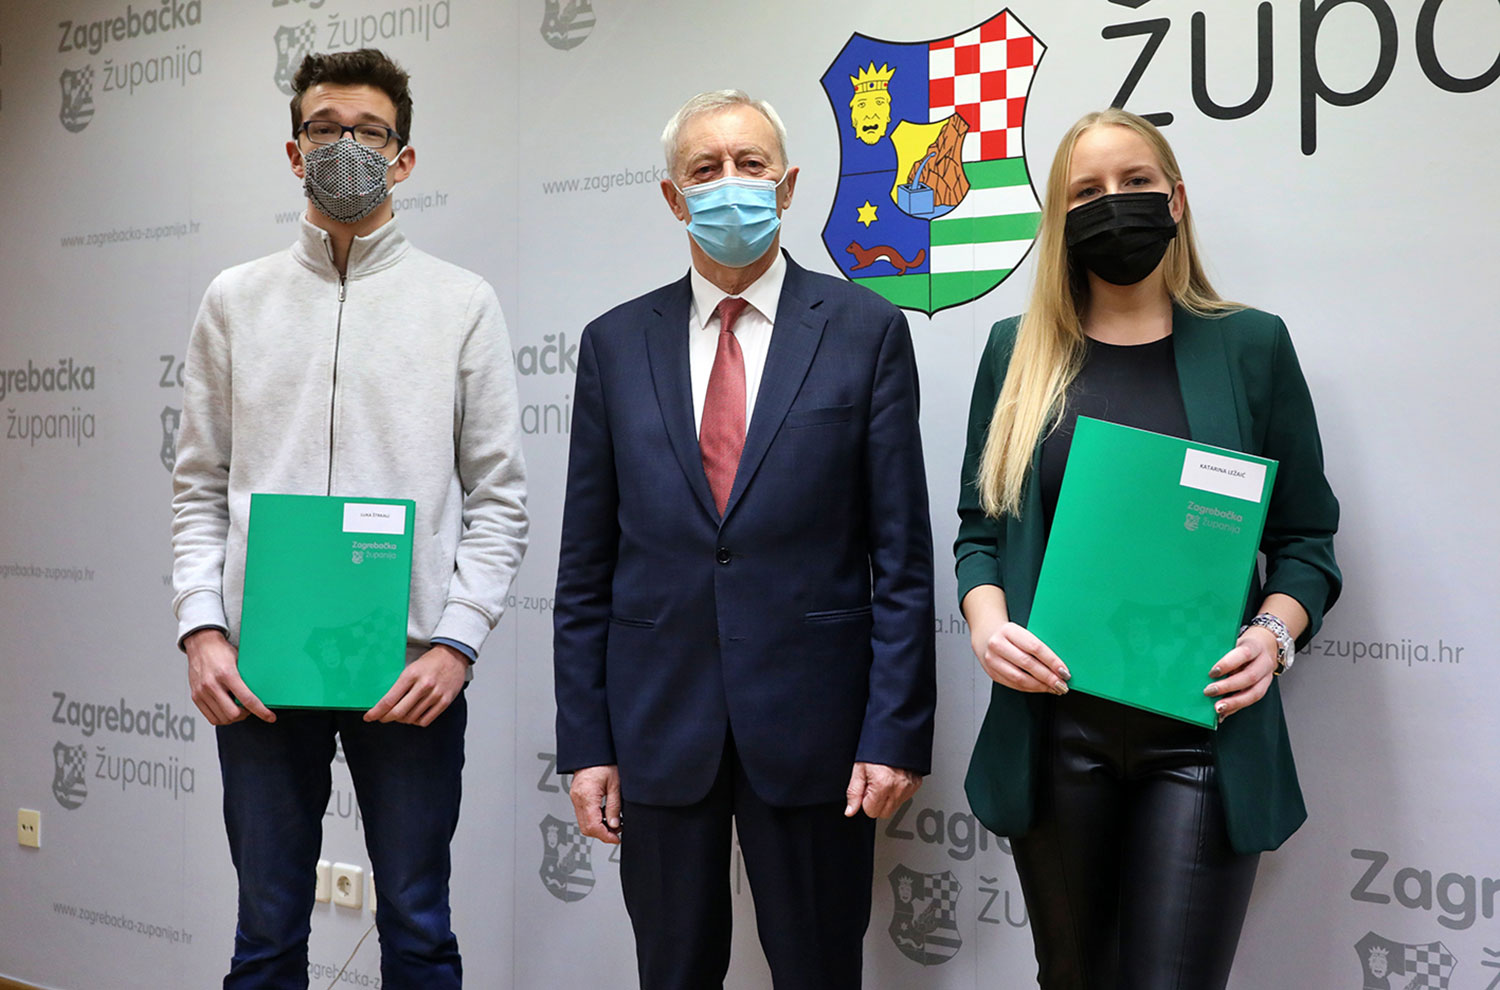 Zagrebačka županija stipendira 208 učenika i studenata